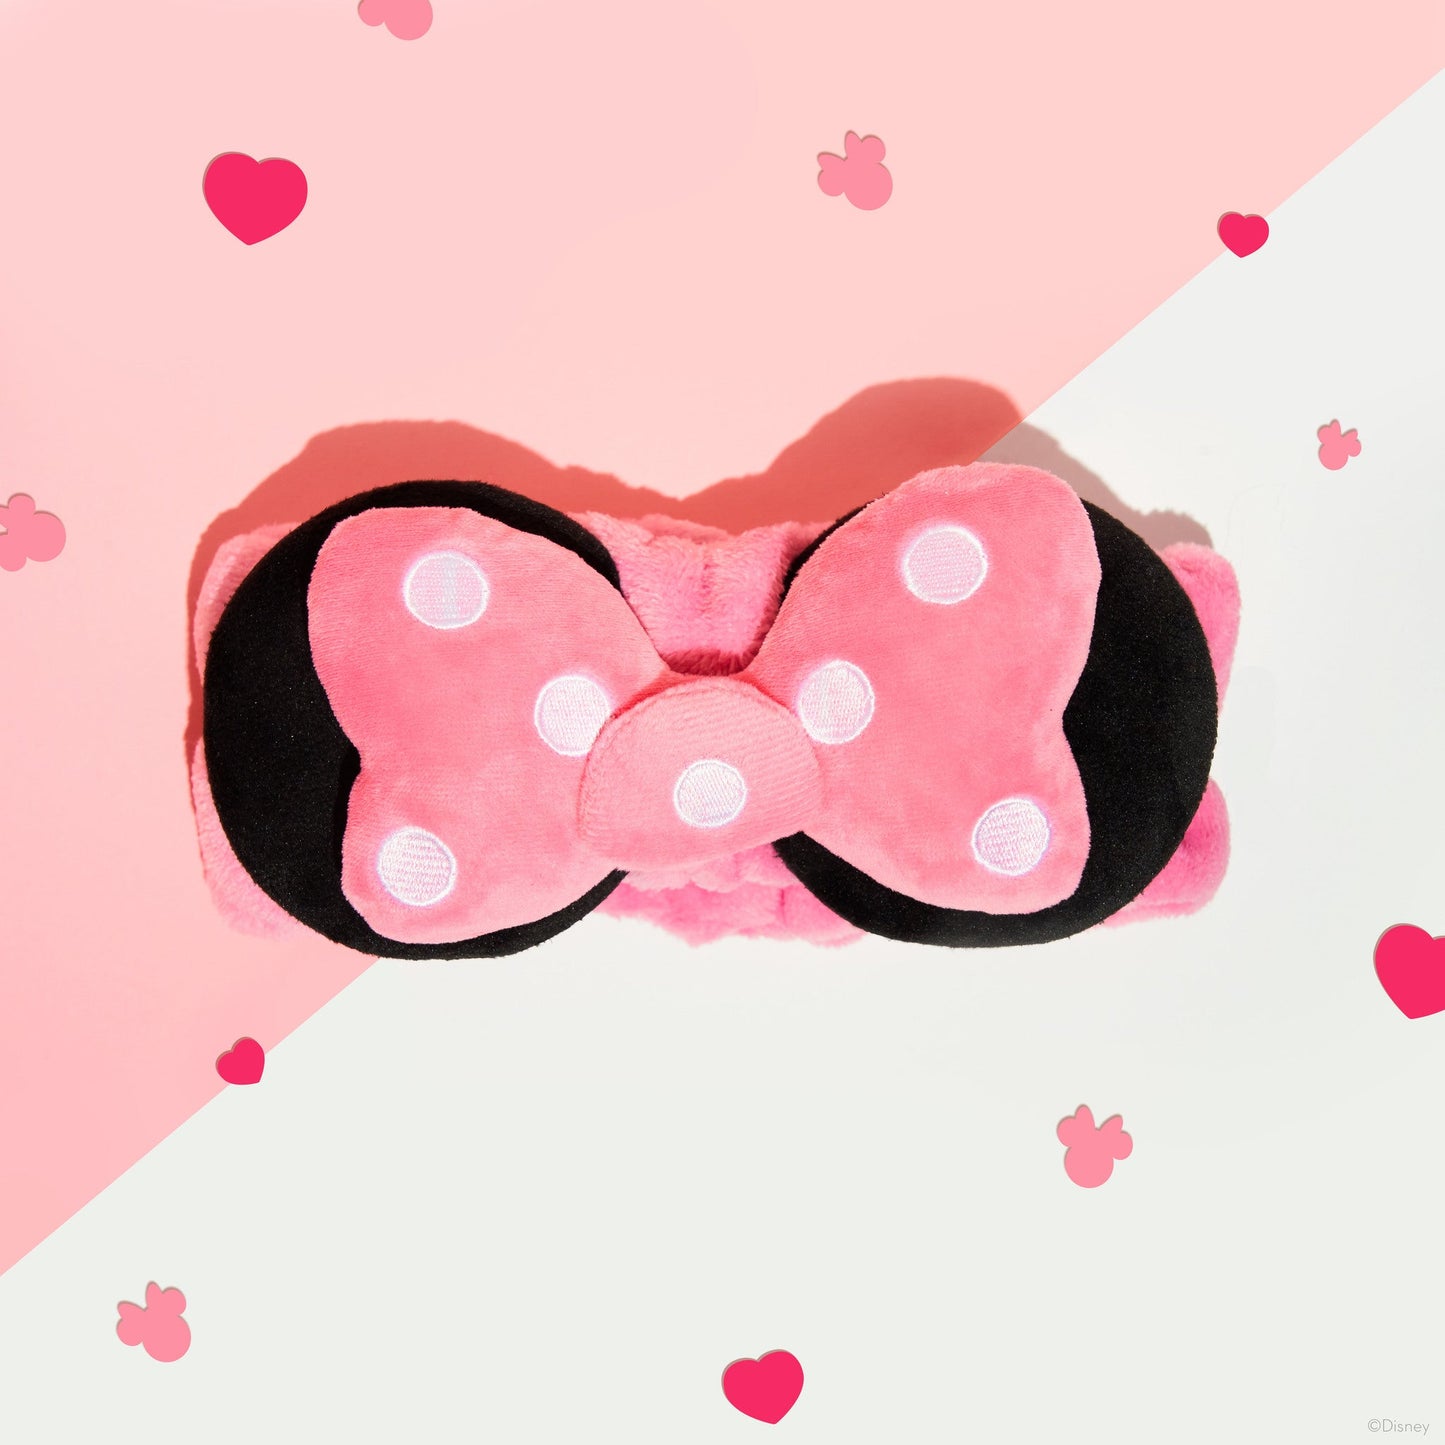 The Crème Shop | Disney: 3D Teddy Headyband™ in "Polka Pink" Headbands The Crème Shop x Disney 